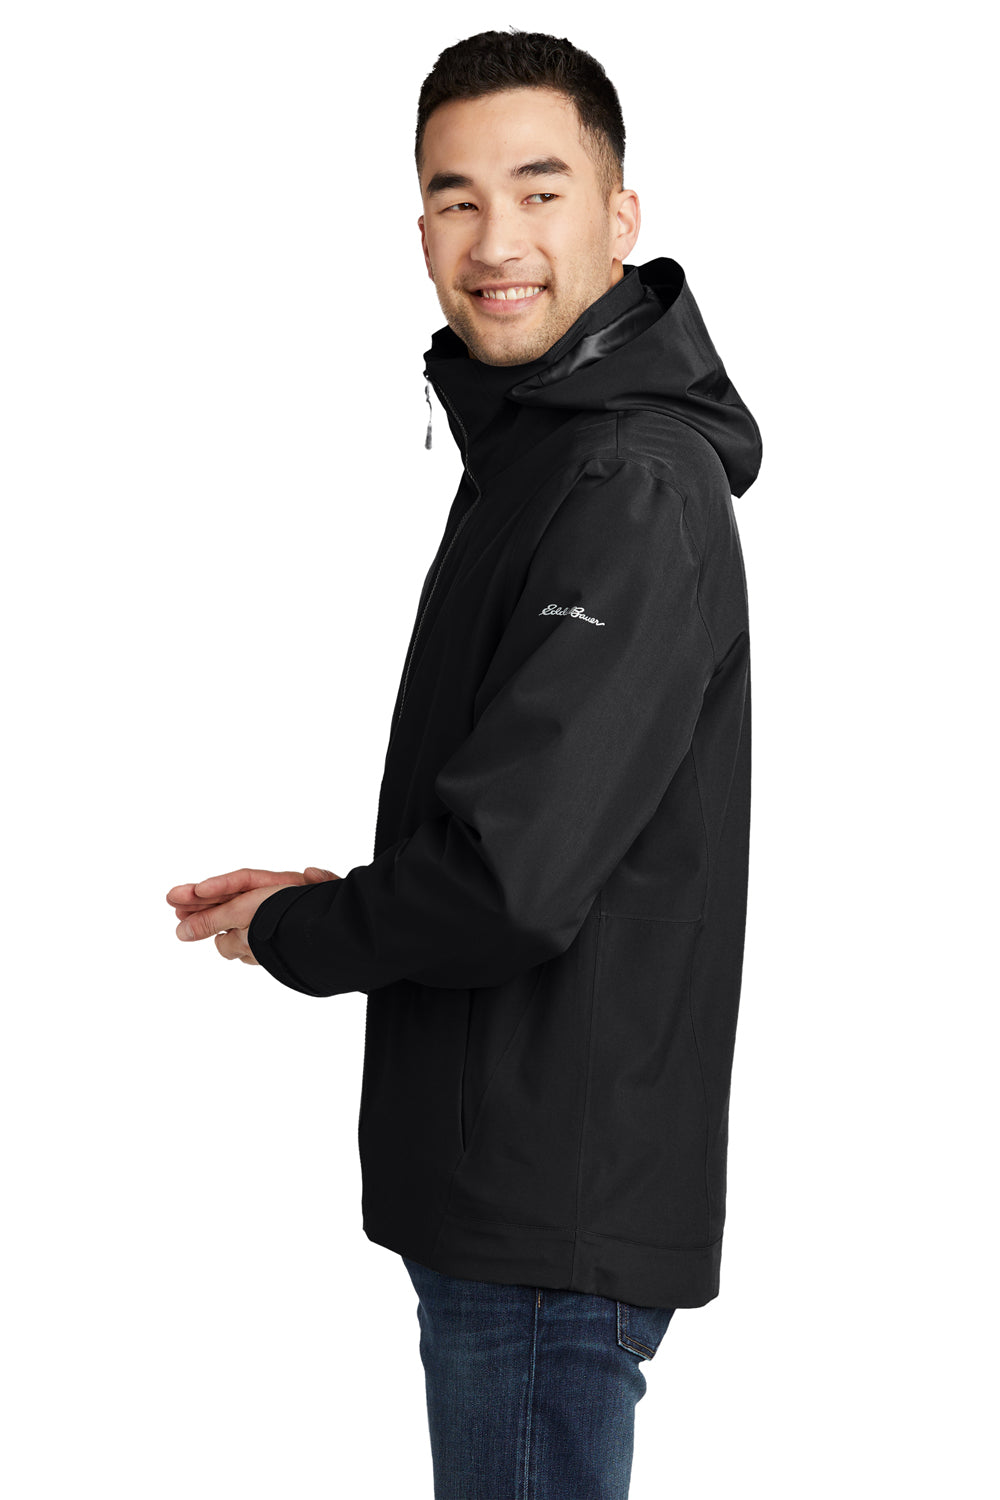 Eddie Bauer EB656 Mens WeatherEdge 3-in-1 Water Resistant Full Zip Hooded Jacket Black/Storm Grey Model Side